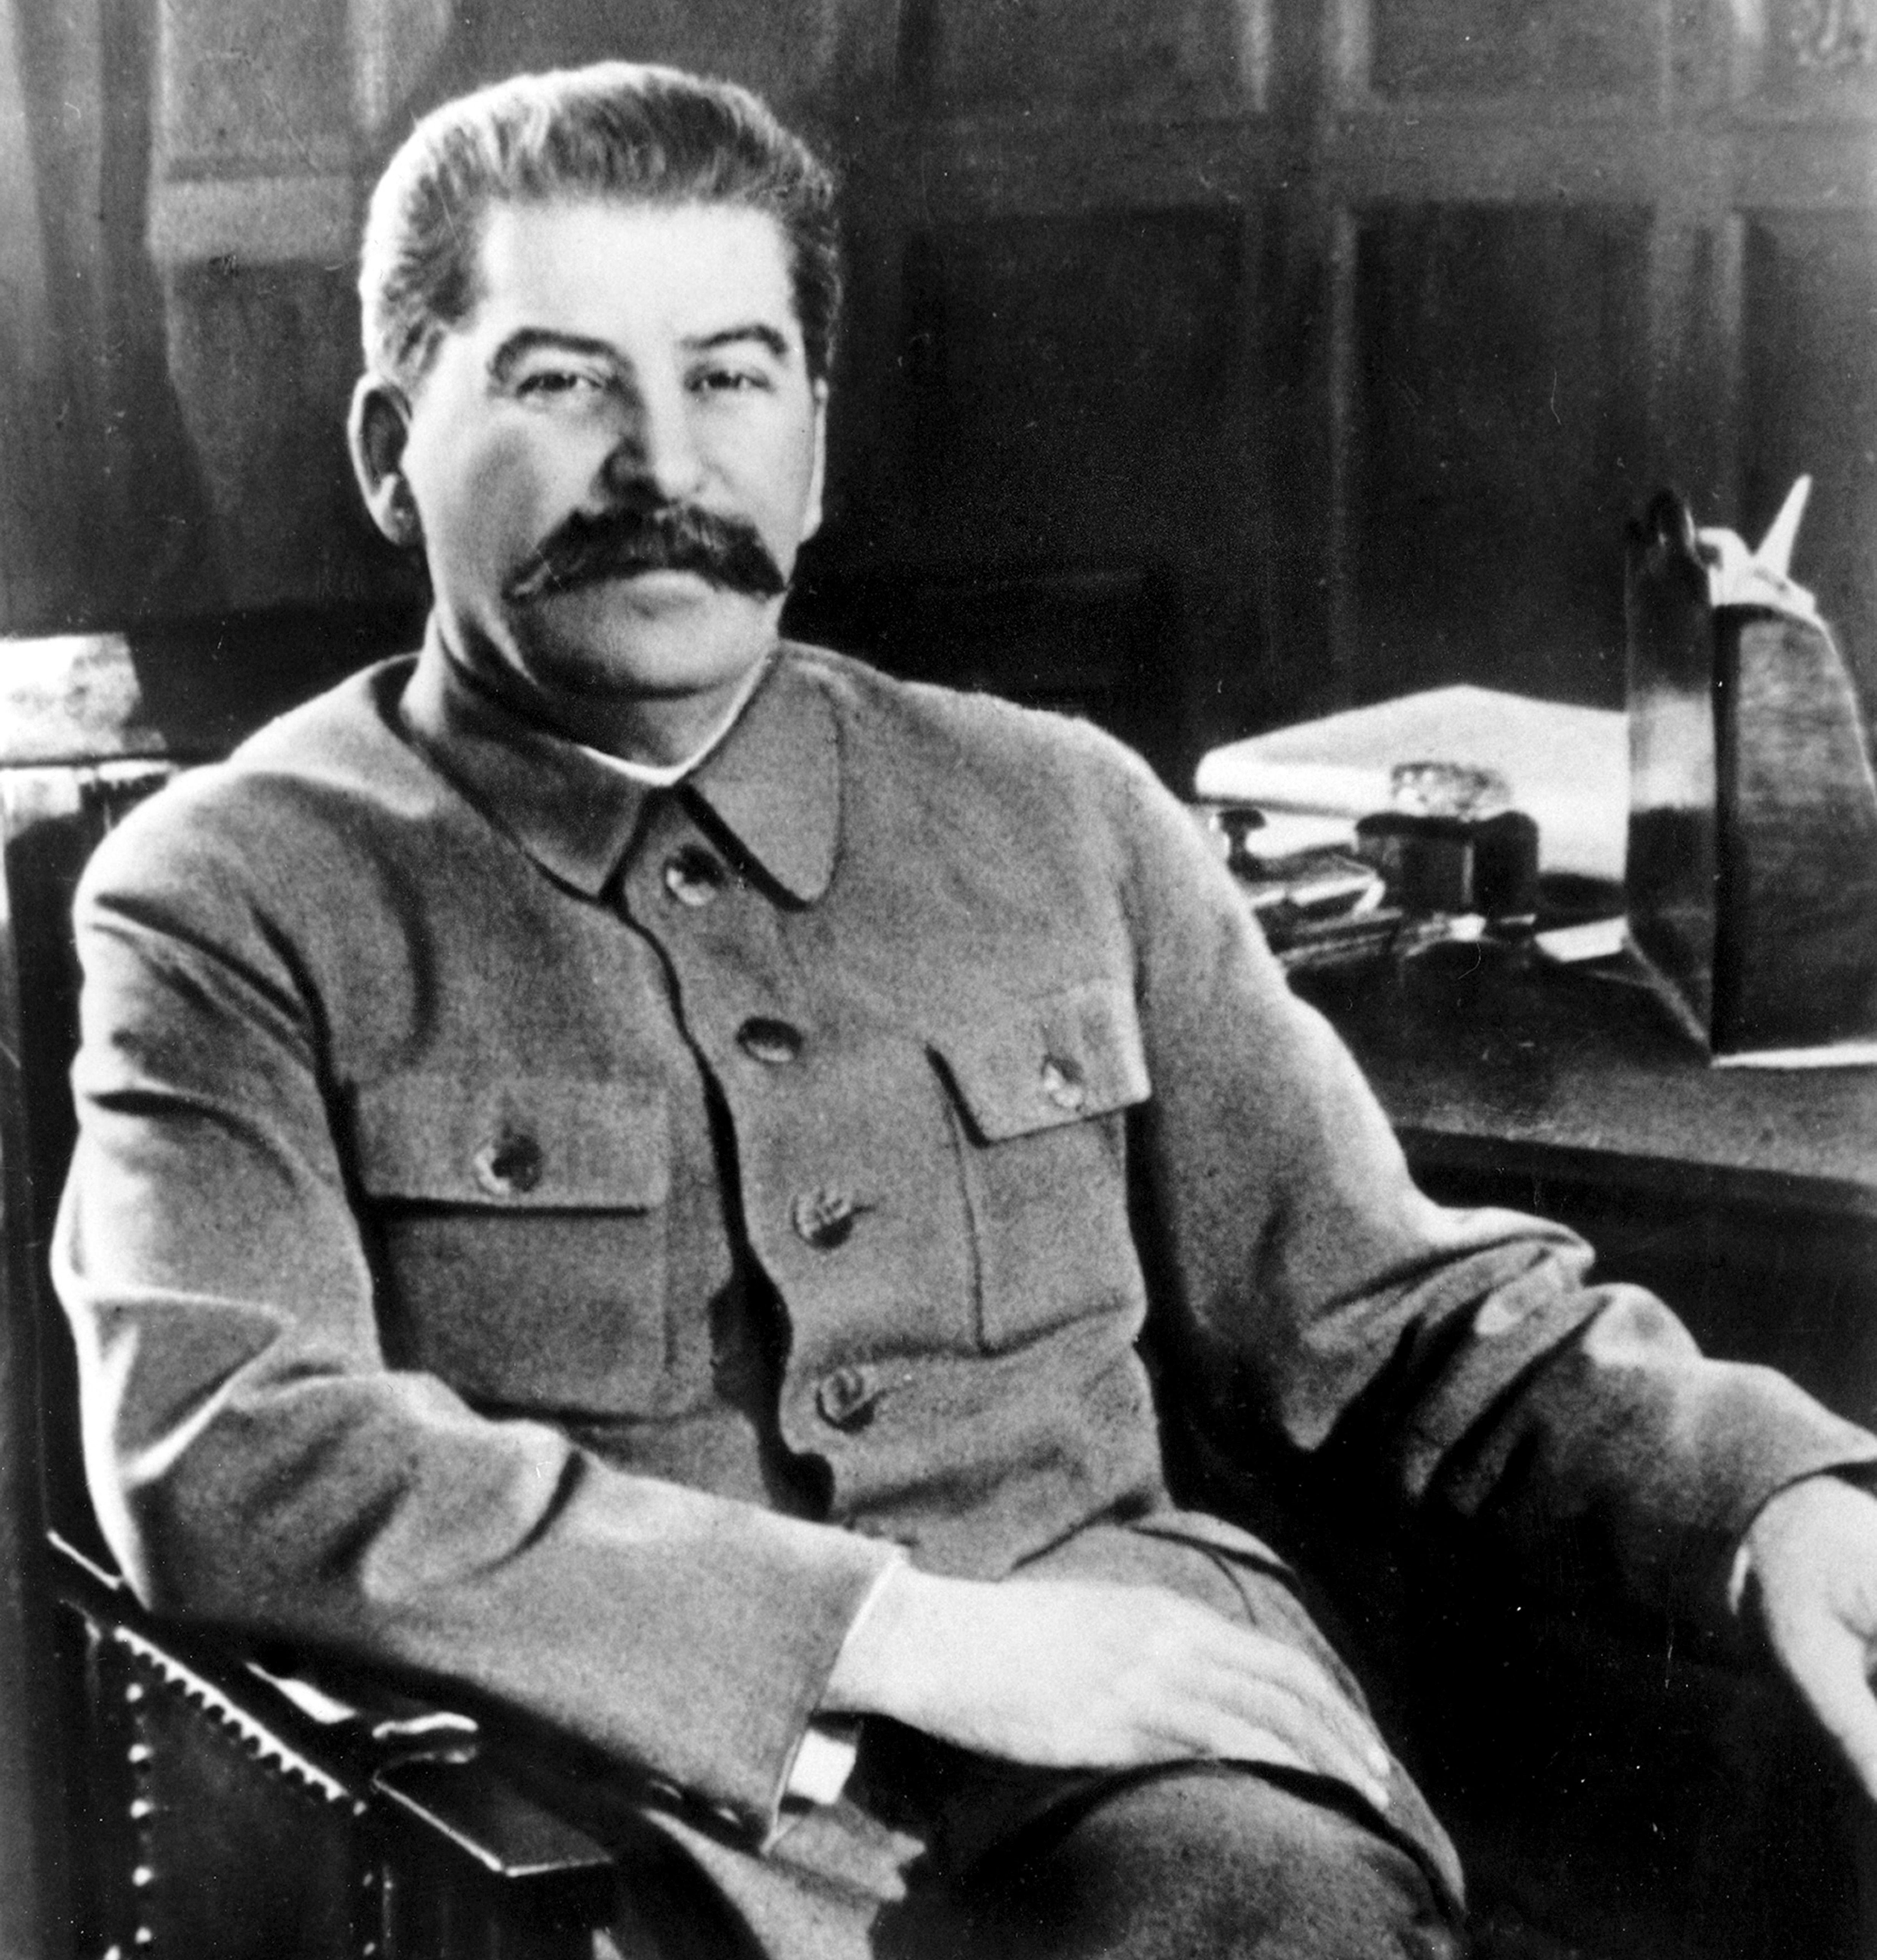 ARCHIVO - Josef Stalin, secretario general del Partido Comunista de la Unión Soviética y primer ministro del estado soviético, posa en su escritorio en el Kremlin, Moscú, Rusia, en febrero de 1950. La muerte de Stalin por una hemorragia cerebral en 1953 fue traumática para soviéticos que lo veneraban.
